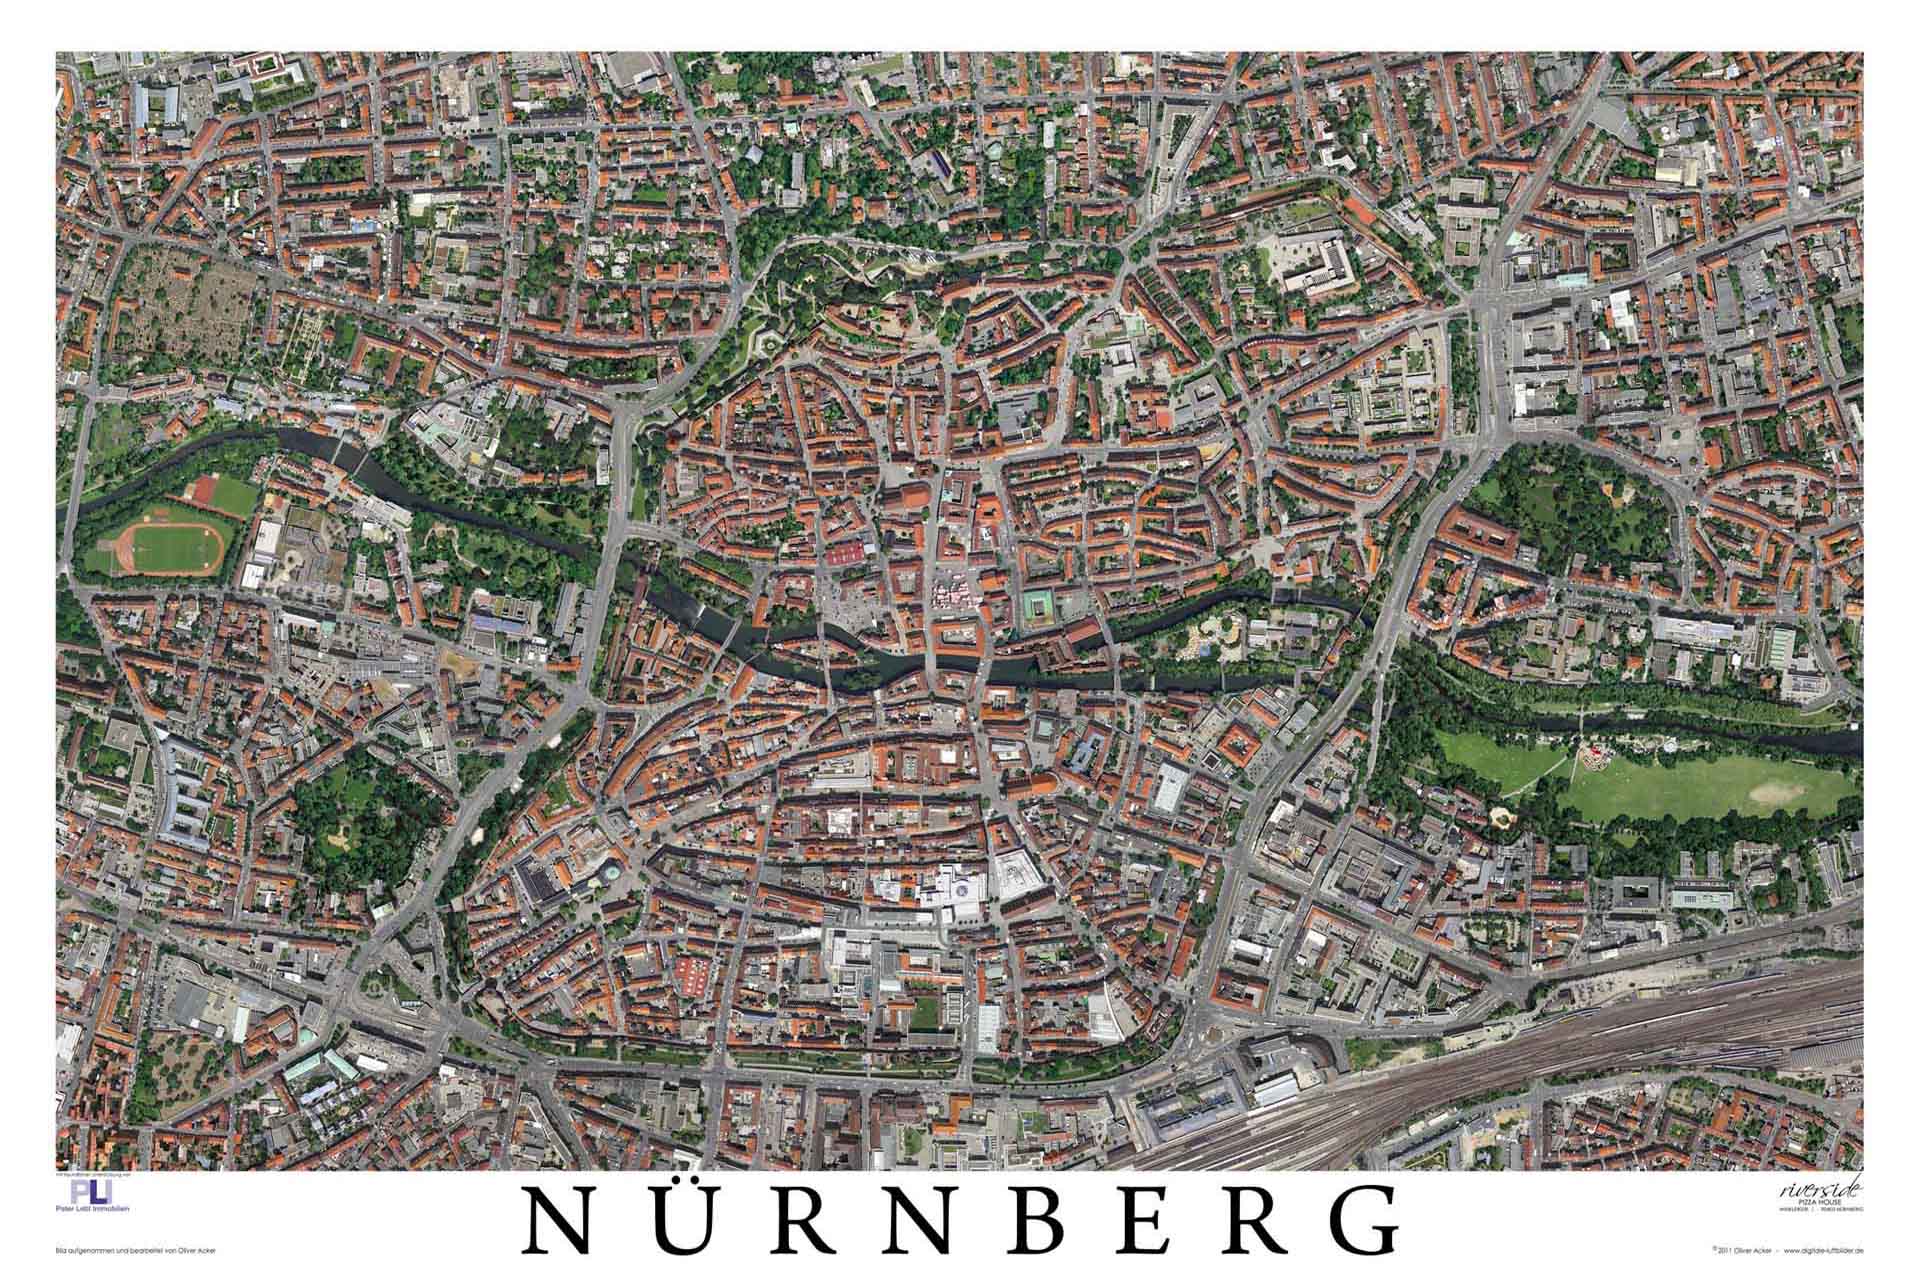 Unser bislang aufwendigstes Projekt stellt das Nürnberg-Poster in der Senkrechtaufnahme dar. Mehrere Flüge waren notwendig, um alle Teile der Nürnberger Altstadt im richtigen Winkel zu erwischen. Durch die nachträgliche und sehr aufwendige Bildbearbeitung entstand so nach und nach eine lückenlose Senkrechtaufnahme von Nürnberg.